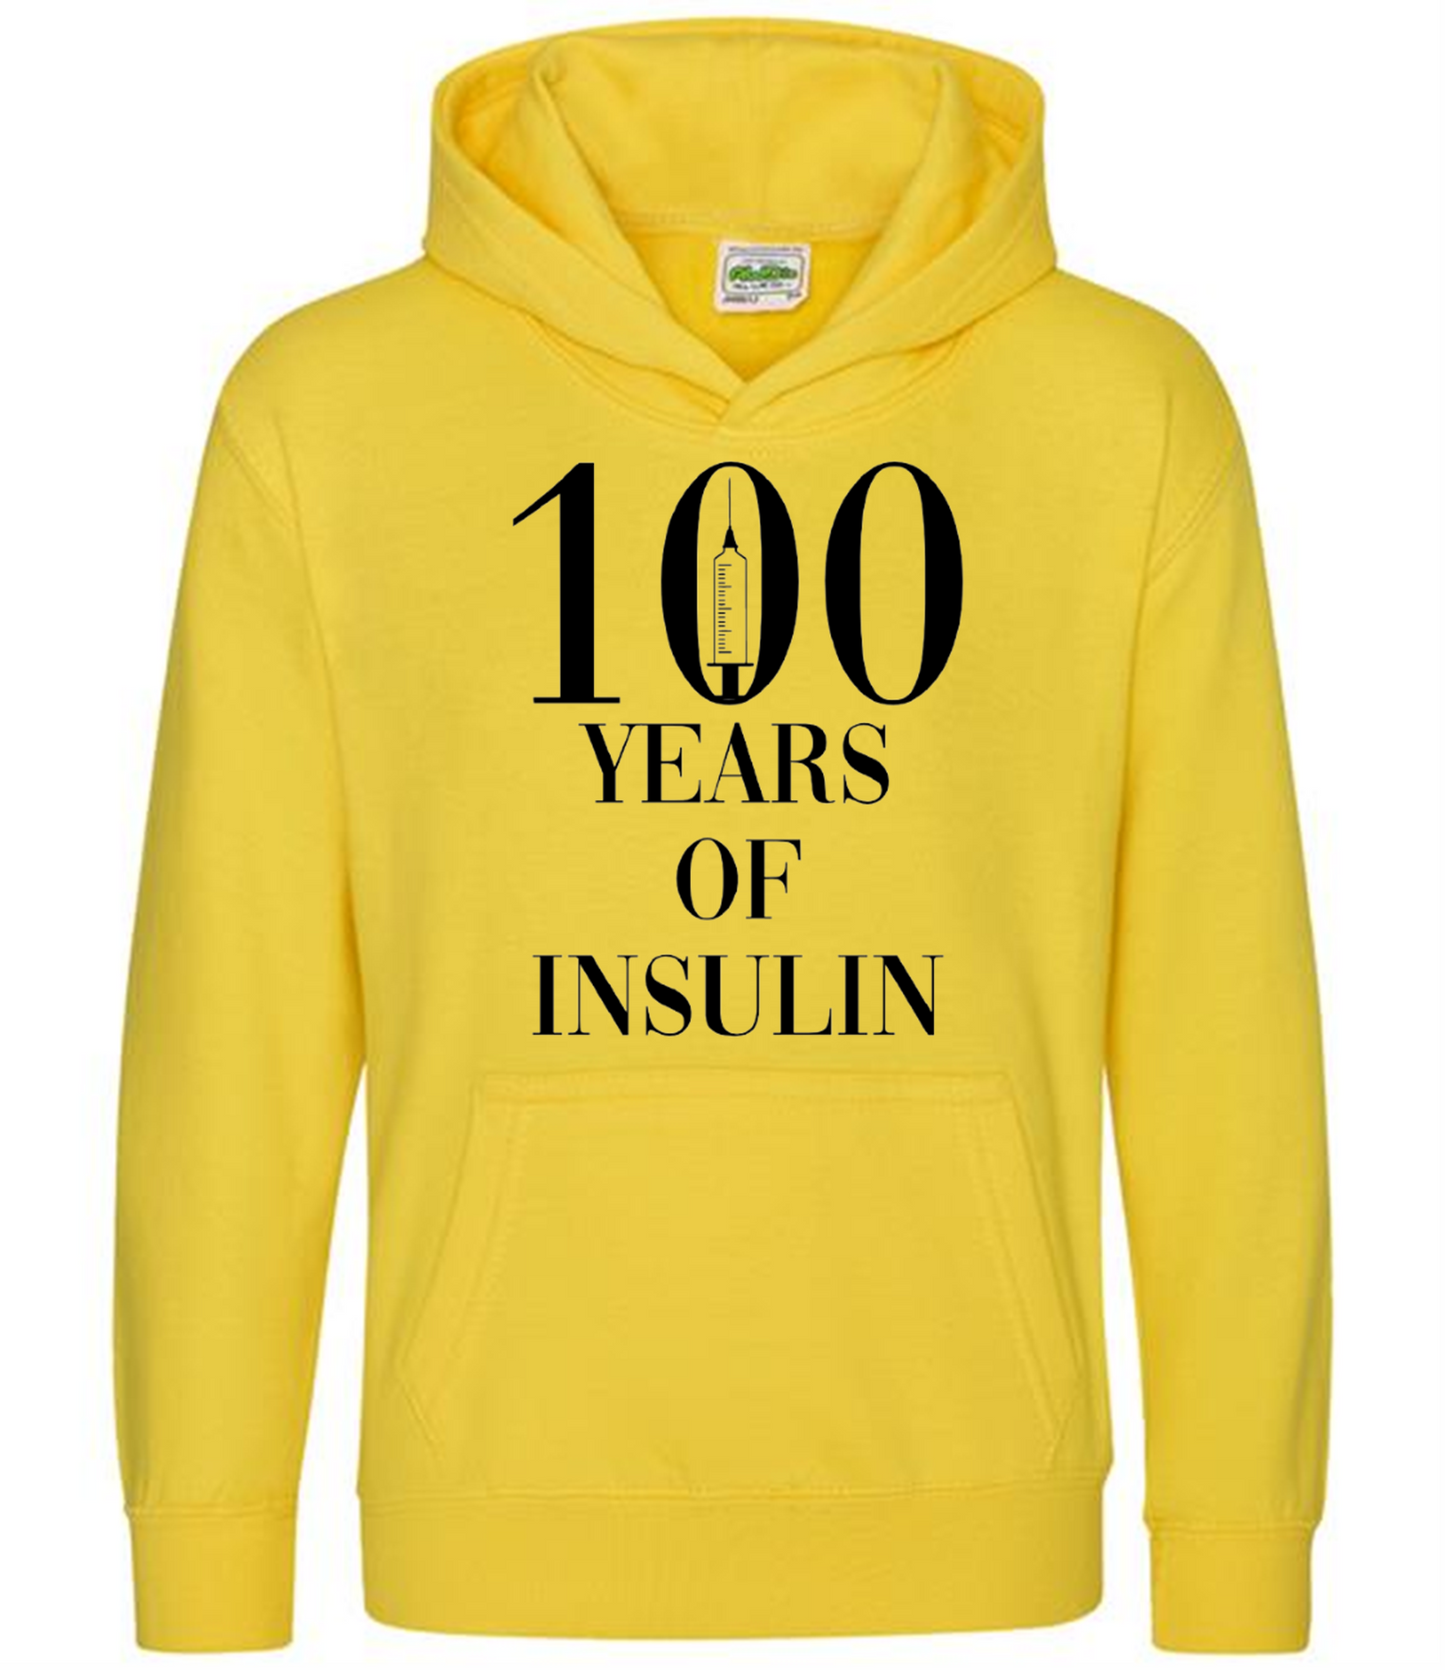 100 Years Of Insulin Kids Hoodie